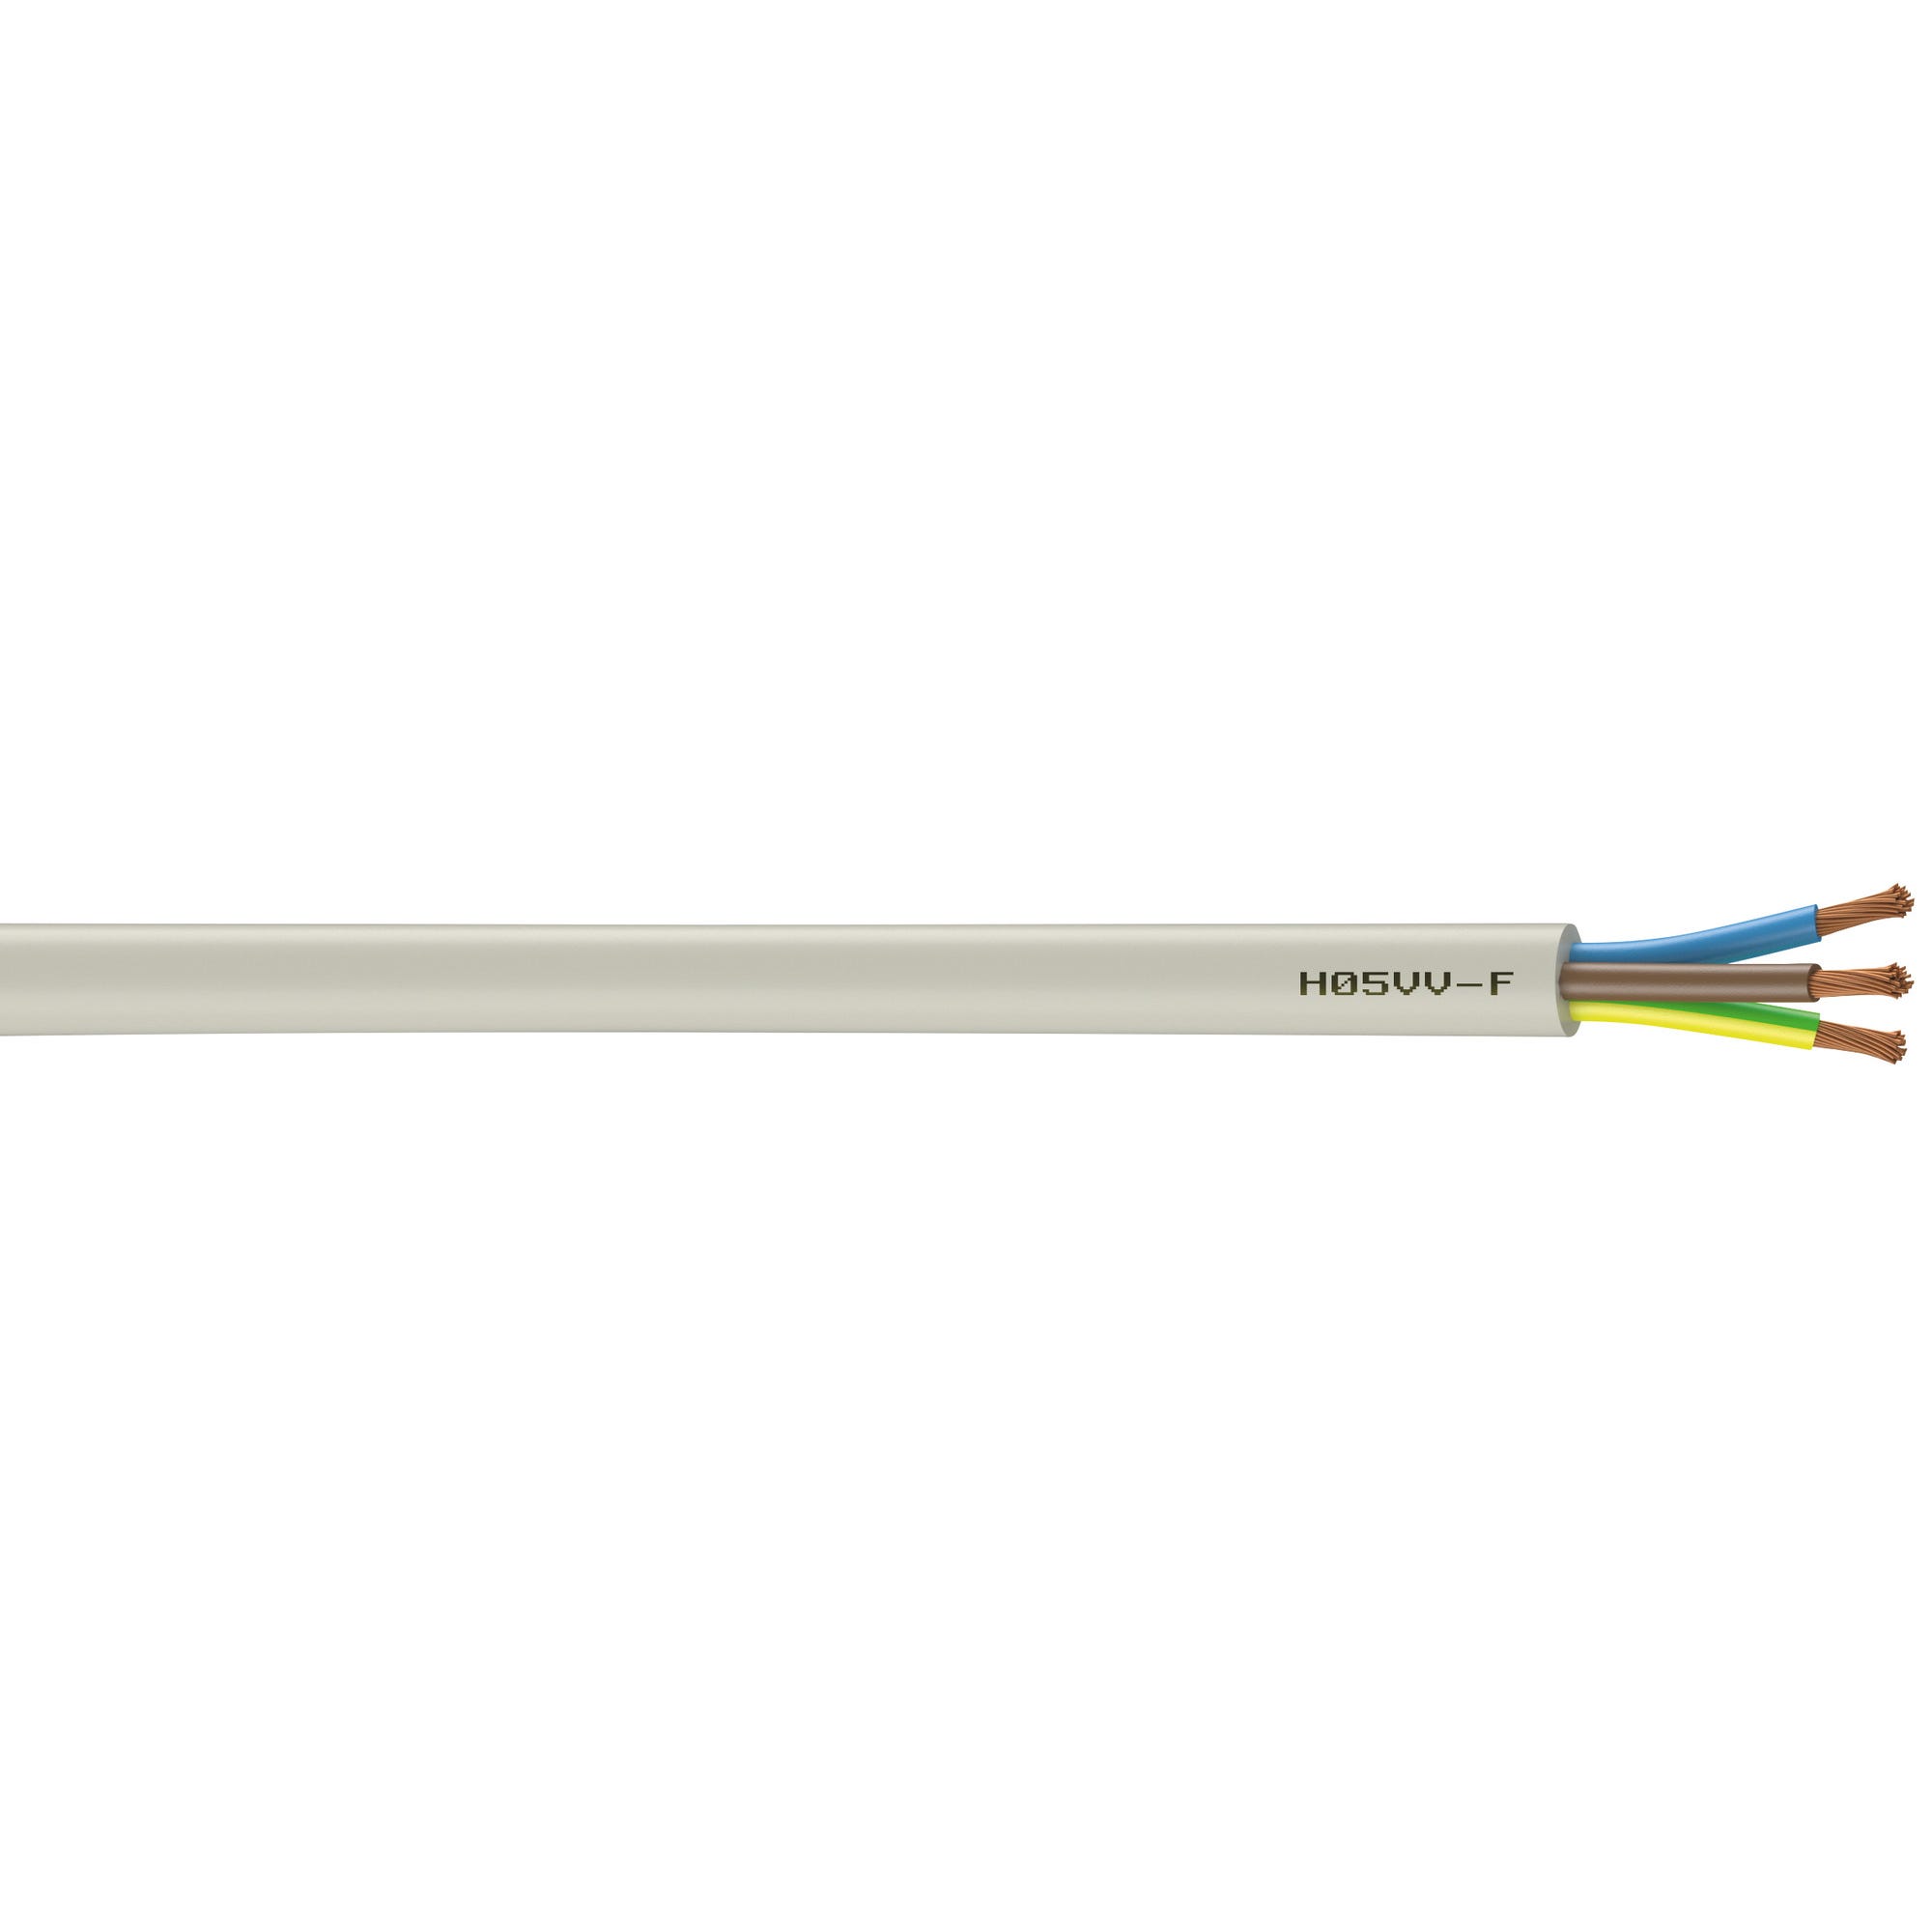 Cable électrique HO5VVF 3G 1,5 mm² Couronne 25 m - NEXANS FRANCE  0